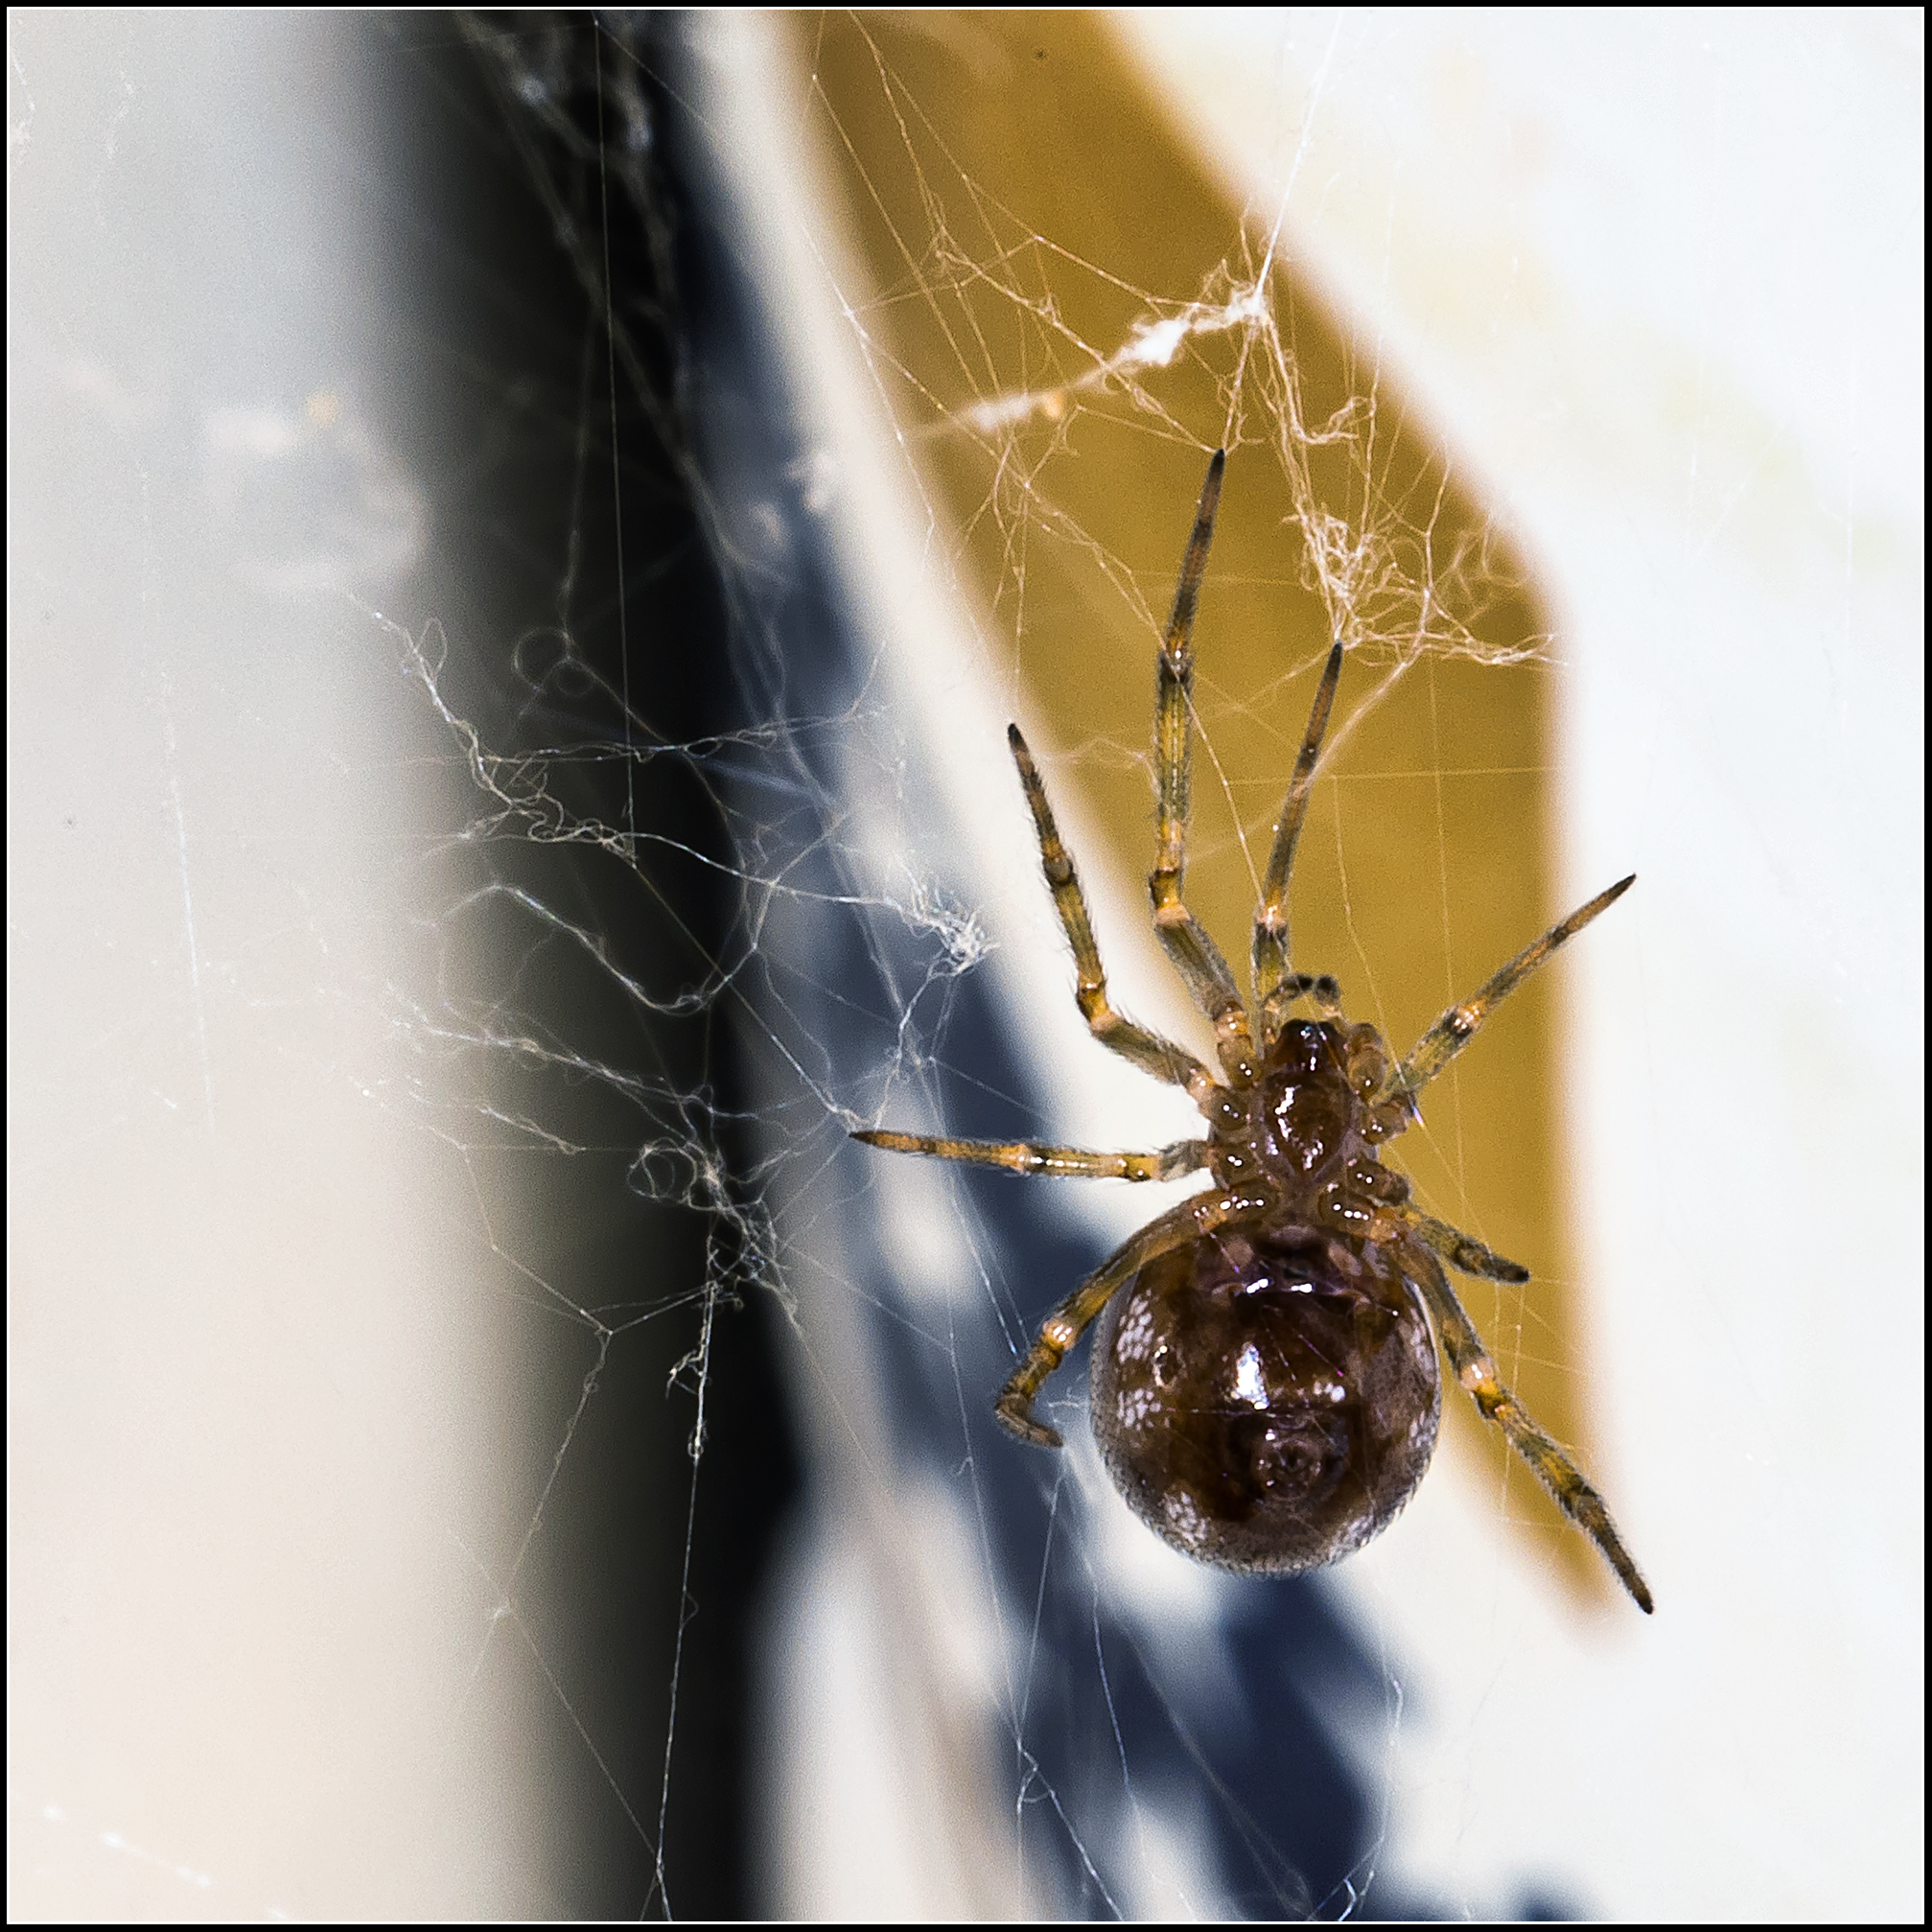 Unusual spider in the kitchen...